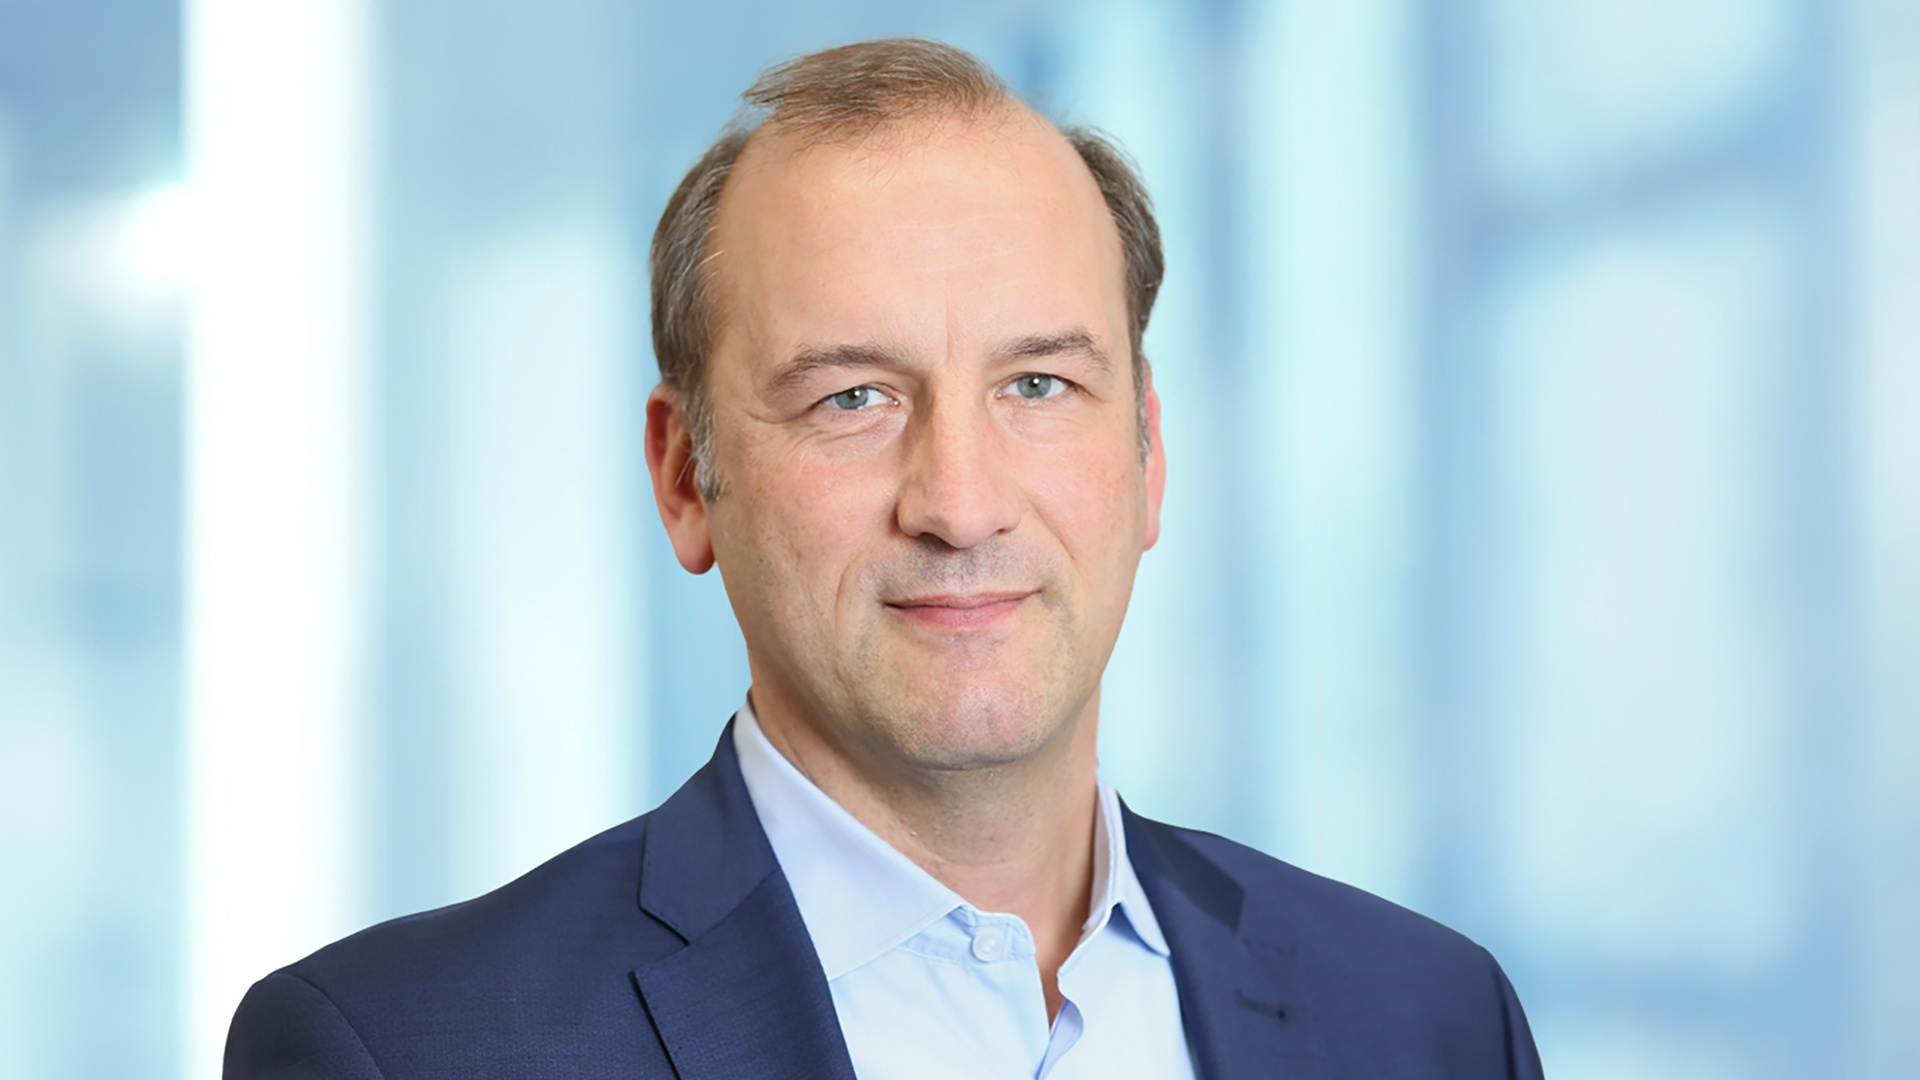 Porträtfoto von Kai Gloystein, Vice President Corporate Finance and Treasury bei der Knorr-Bremse AG